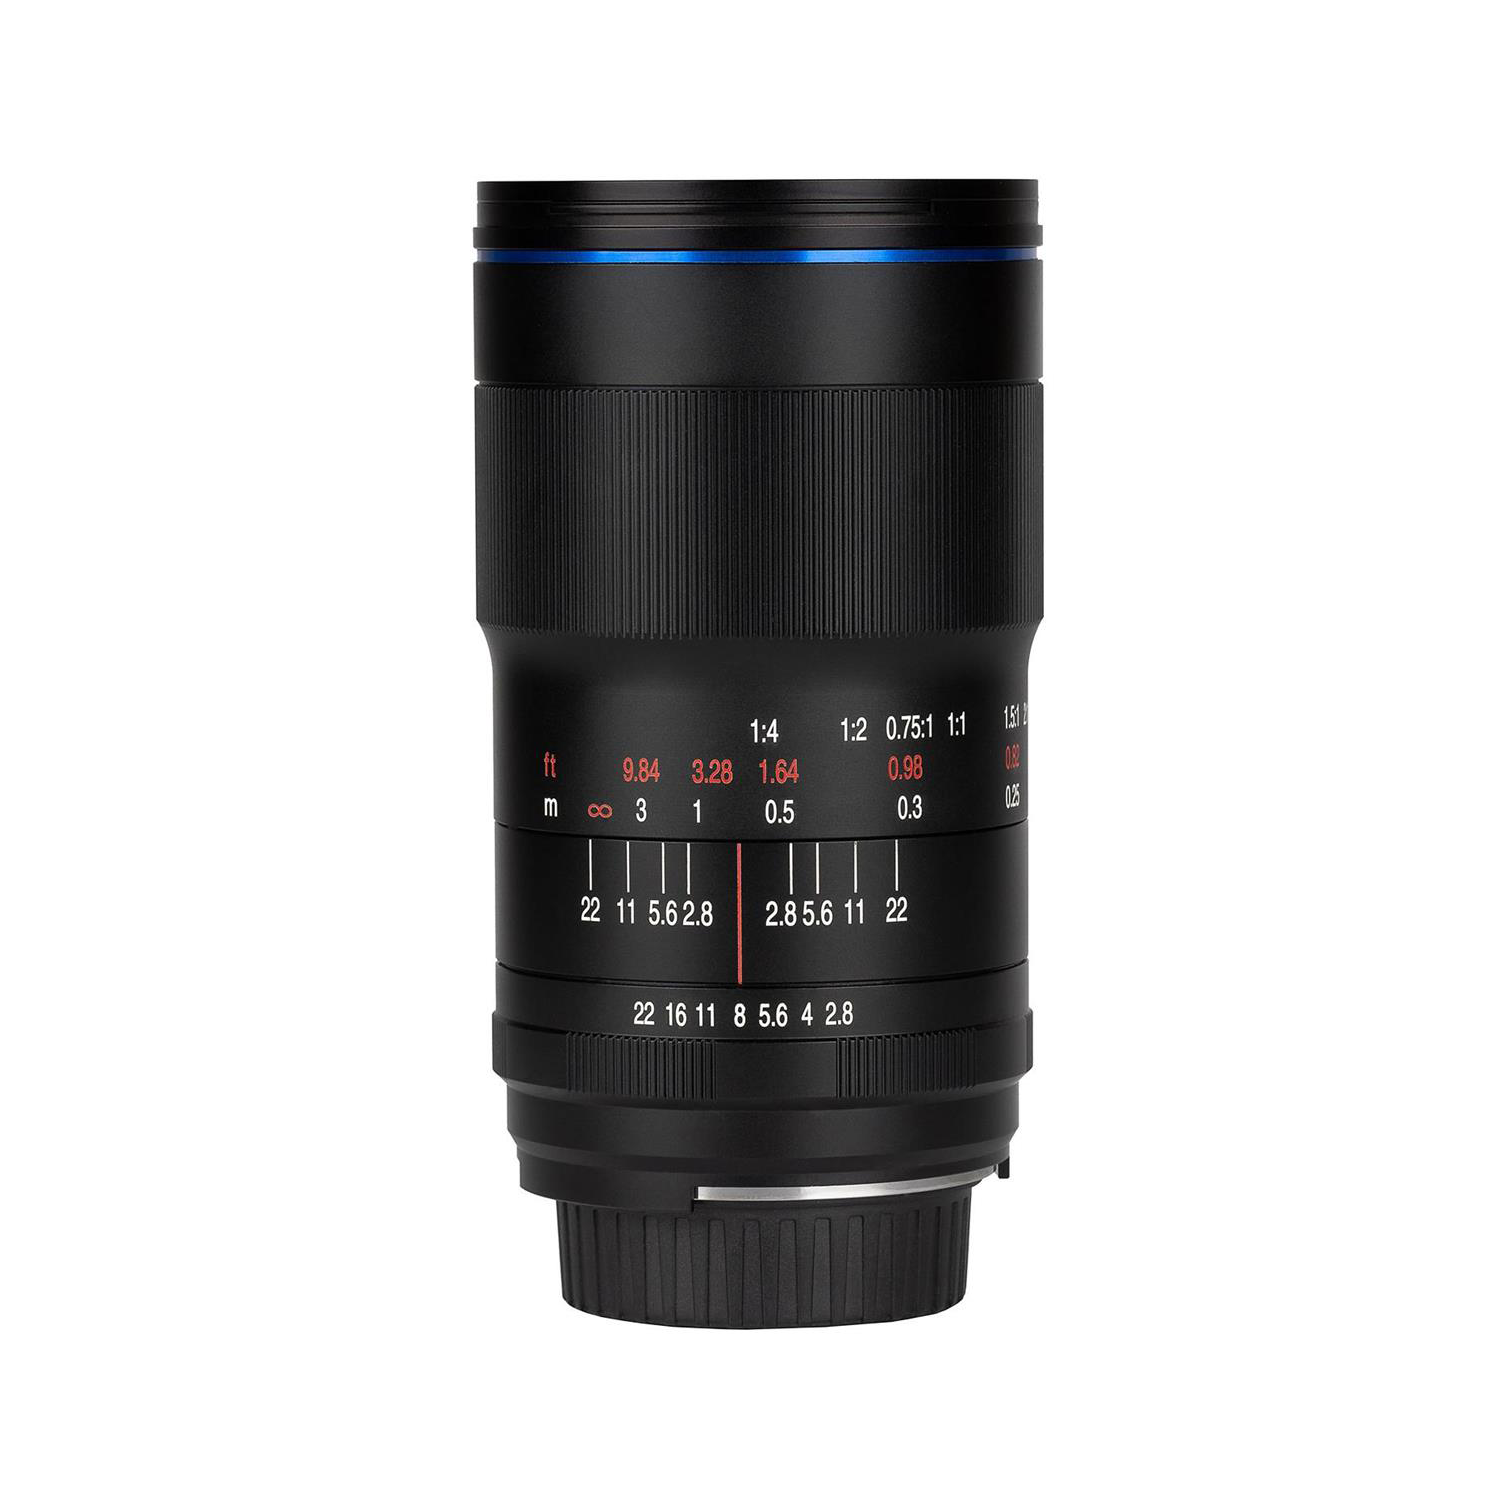 Vénus Laowa 100 mm f / 2,8 2x lentille ultra macro apo pour Sony Fe